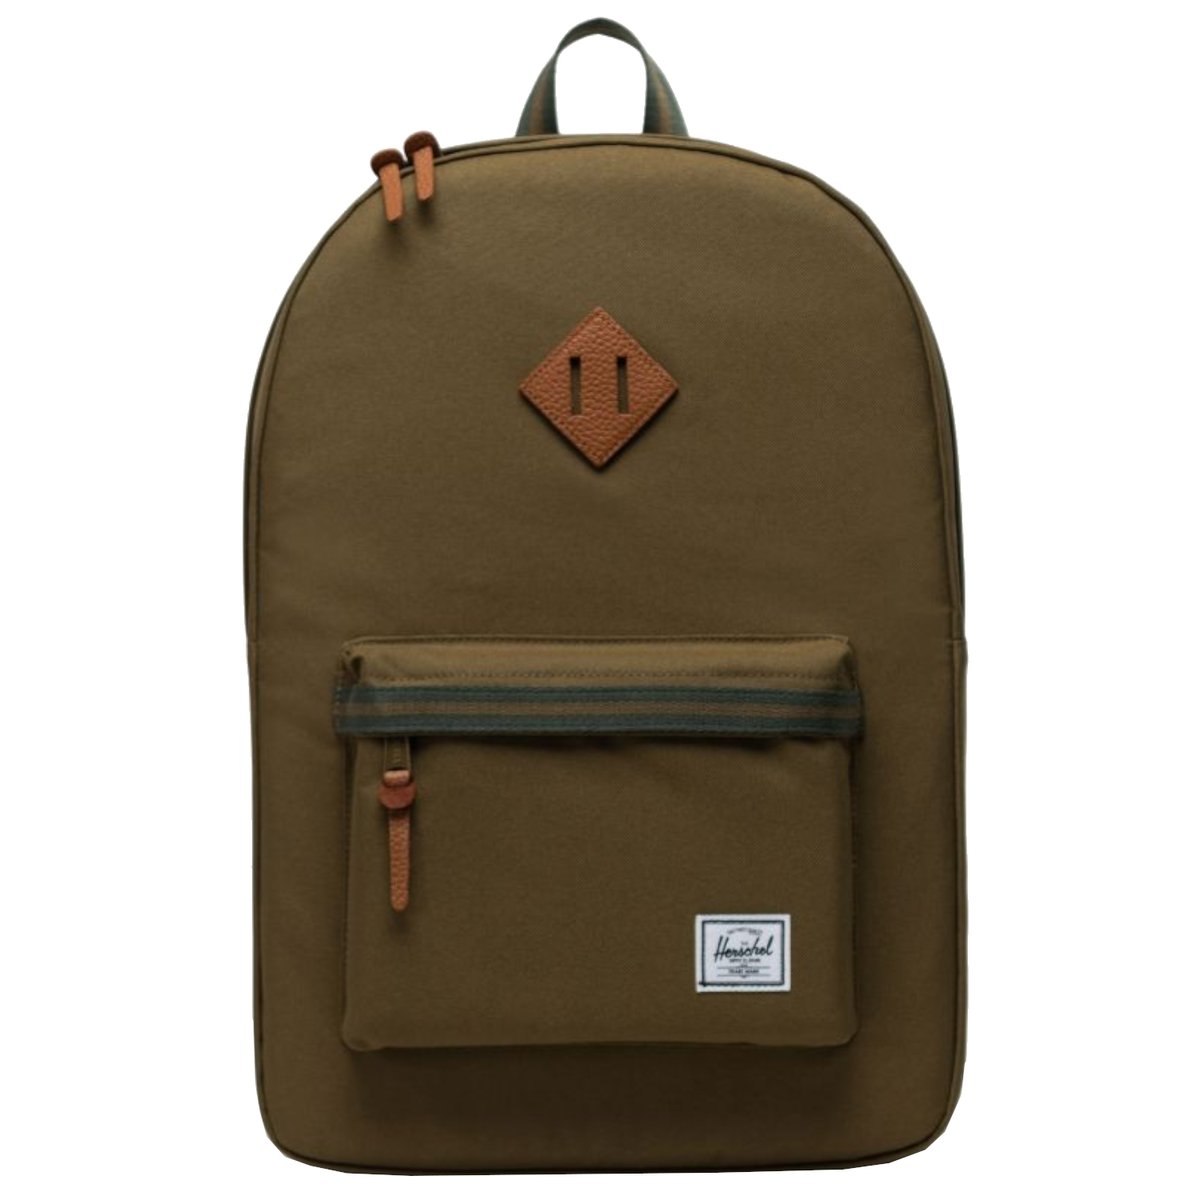 Herschel Heritage Backpack 10007-05651, Zielone Plecak, pojemność: 21,5 L